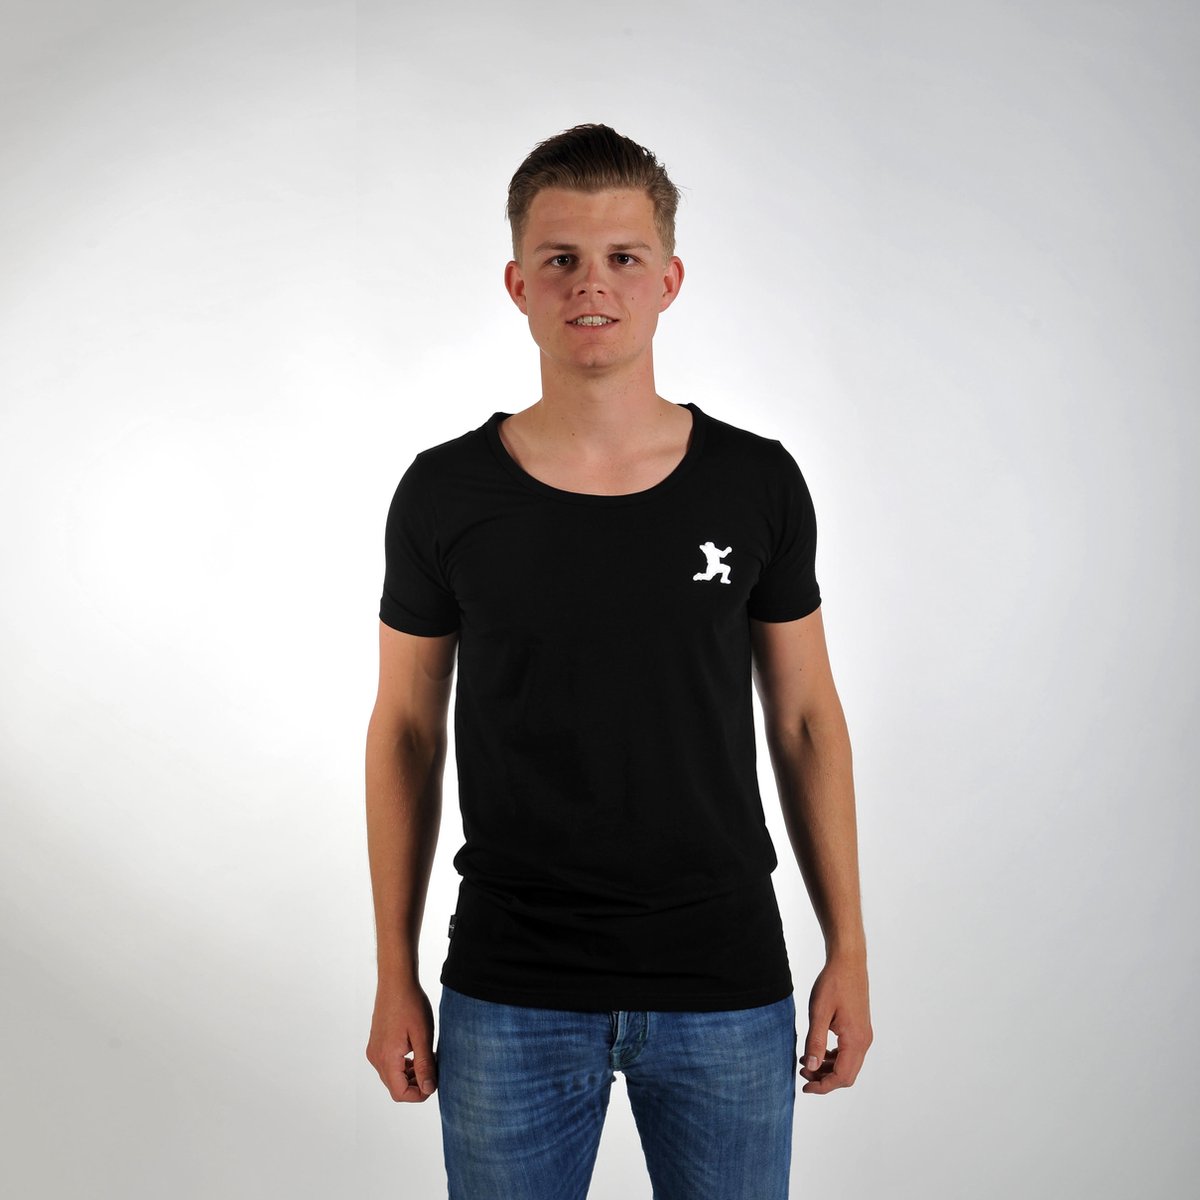 Imperatore - Andy van der Meijde t-shirt - zwart - wit logo - Maat L